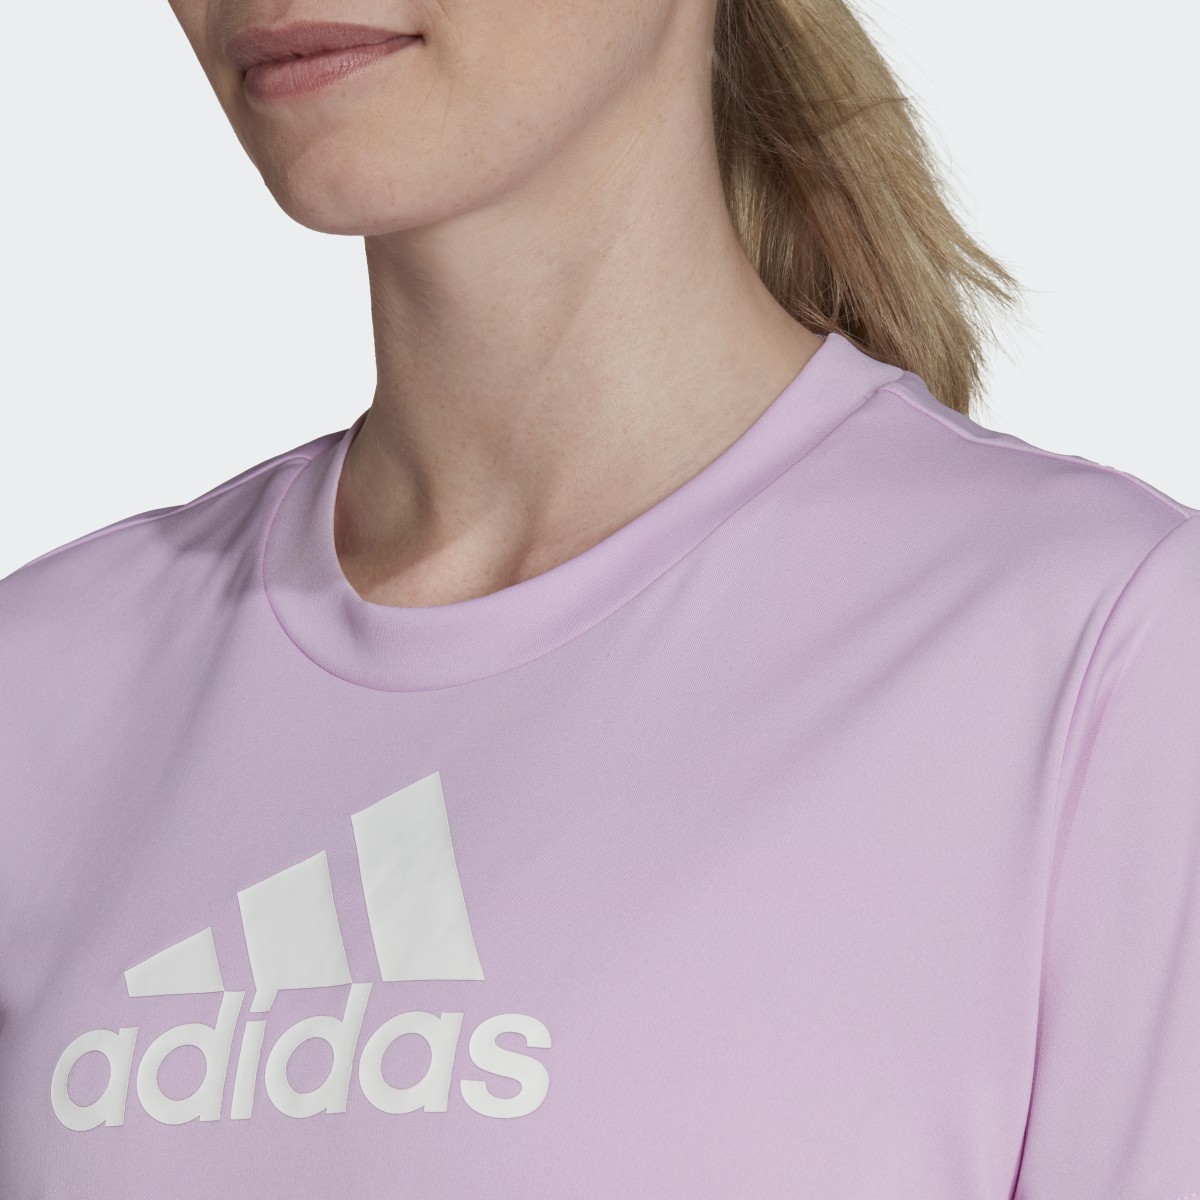 Adidas Primeblue Designed 2 Move Logo Sport T-Shirt. 6